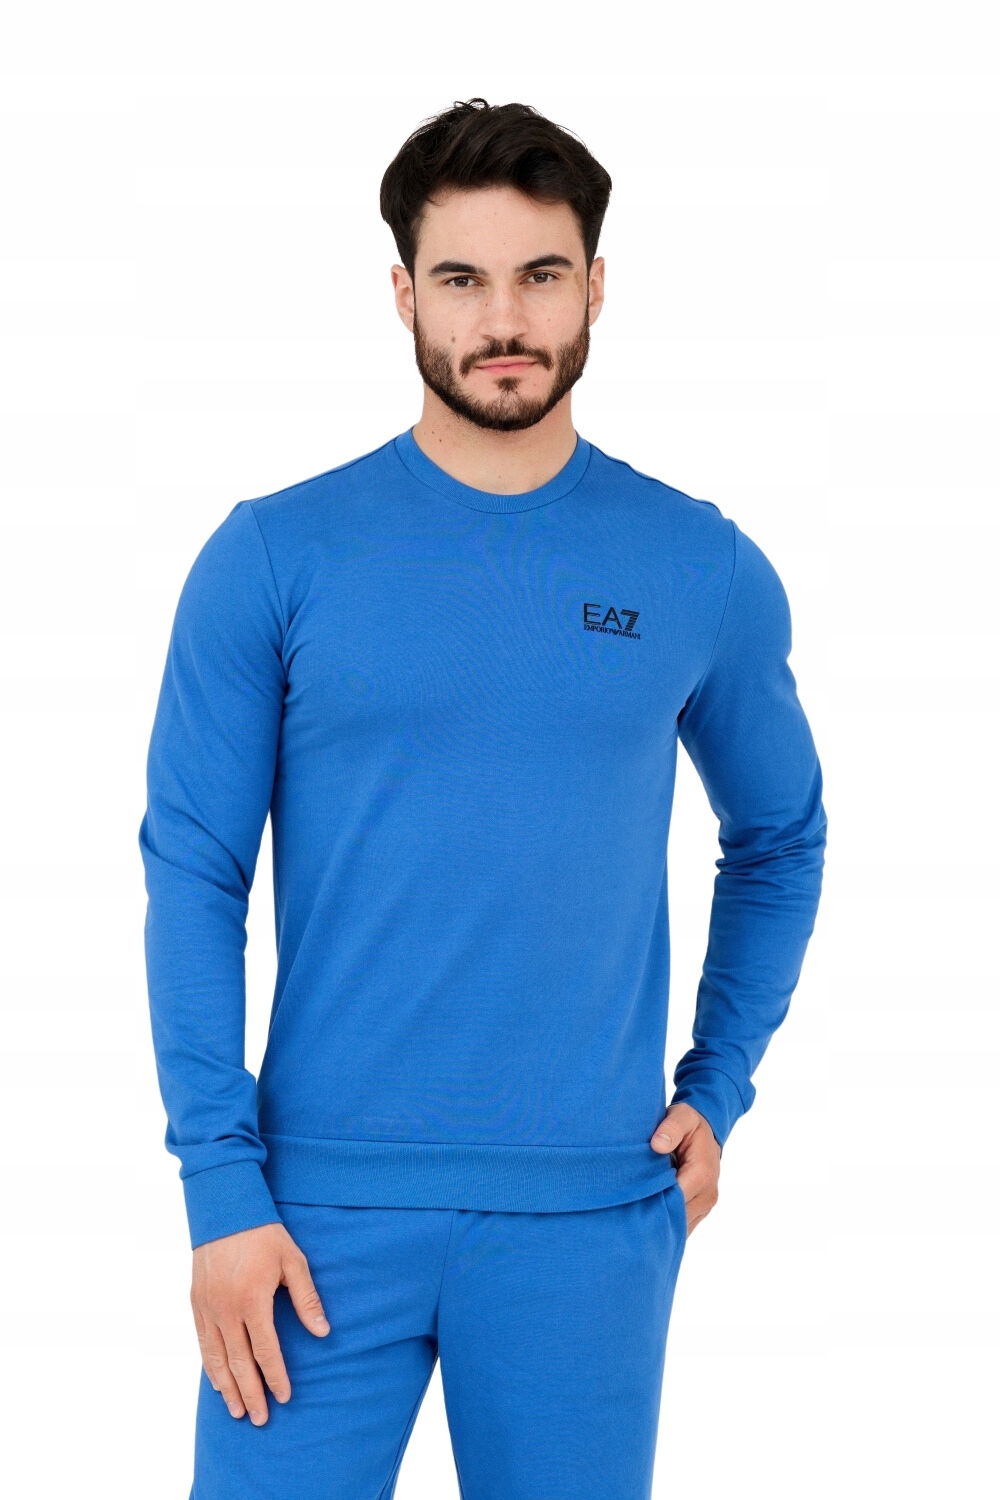 EA7 Niebieska bluza męska z czarnym logo L